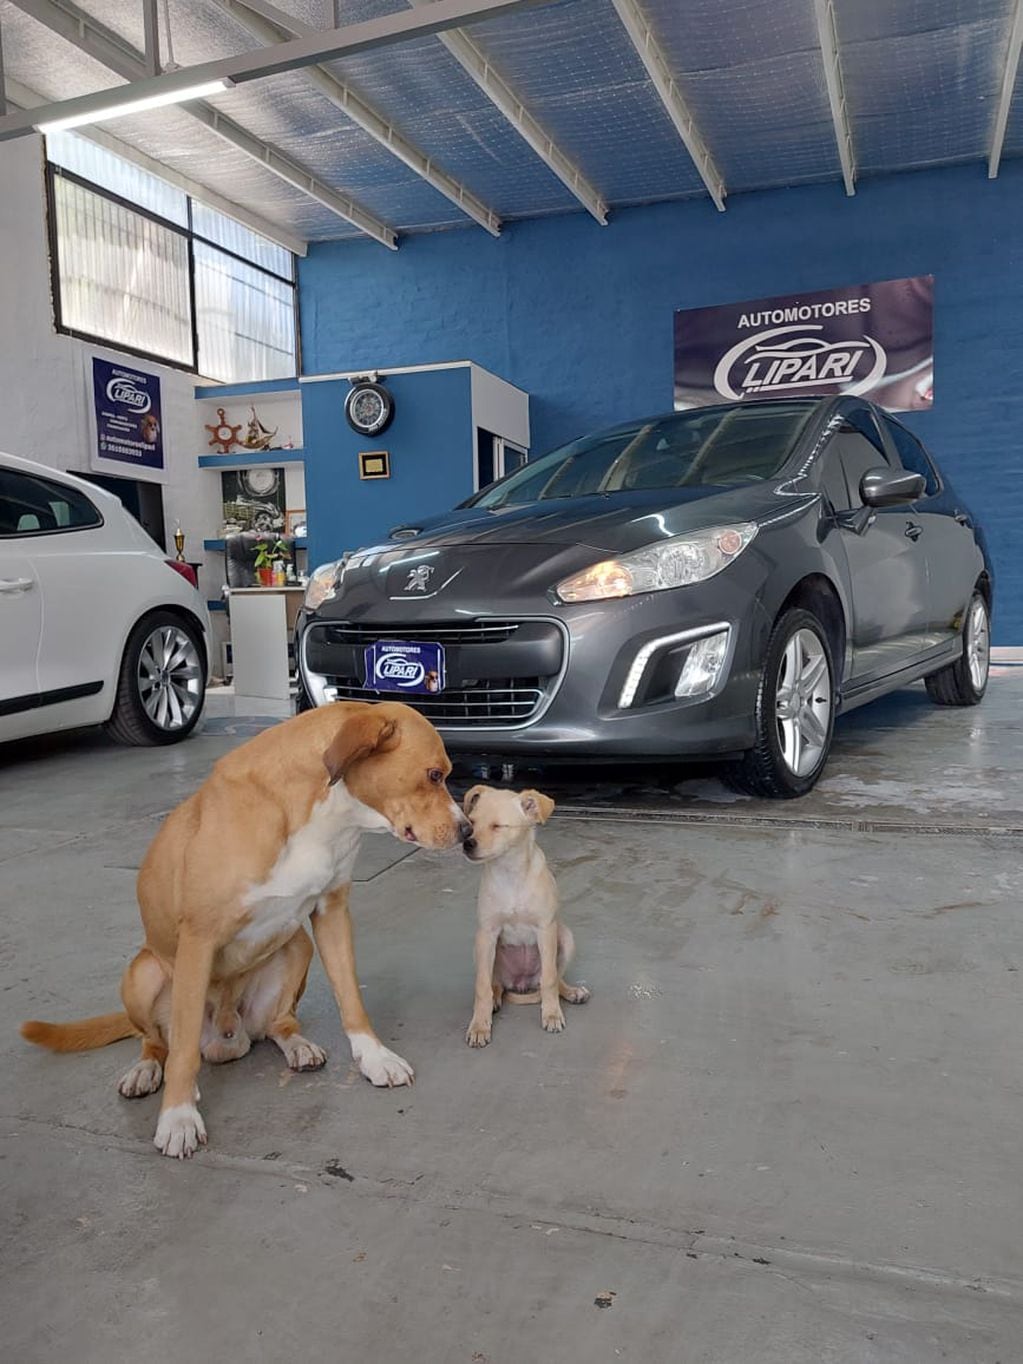 La historia detrás de la agencia de autos mendocina que es "atendida por perros": “Nuestro sueño es crear un refugio”